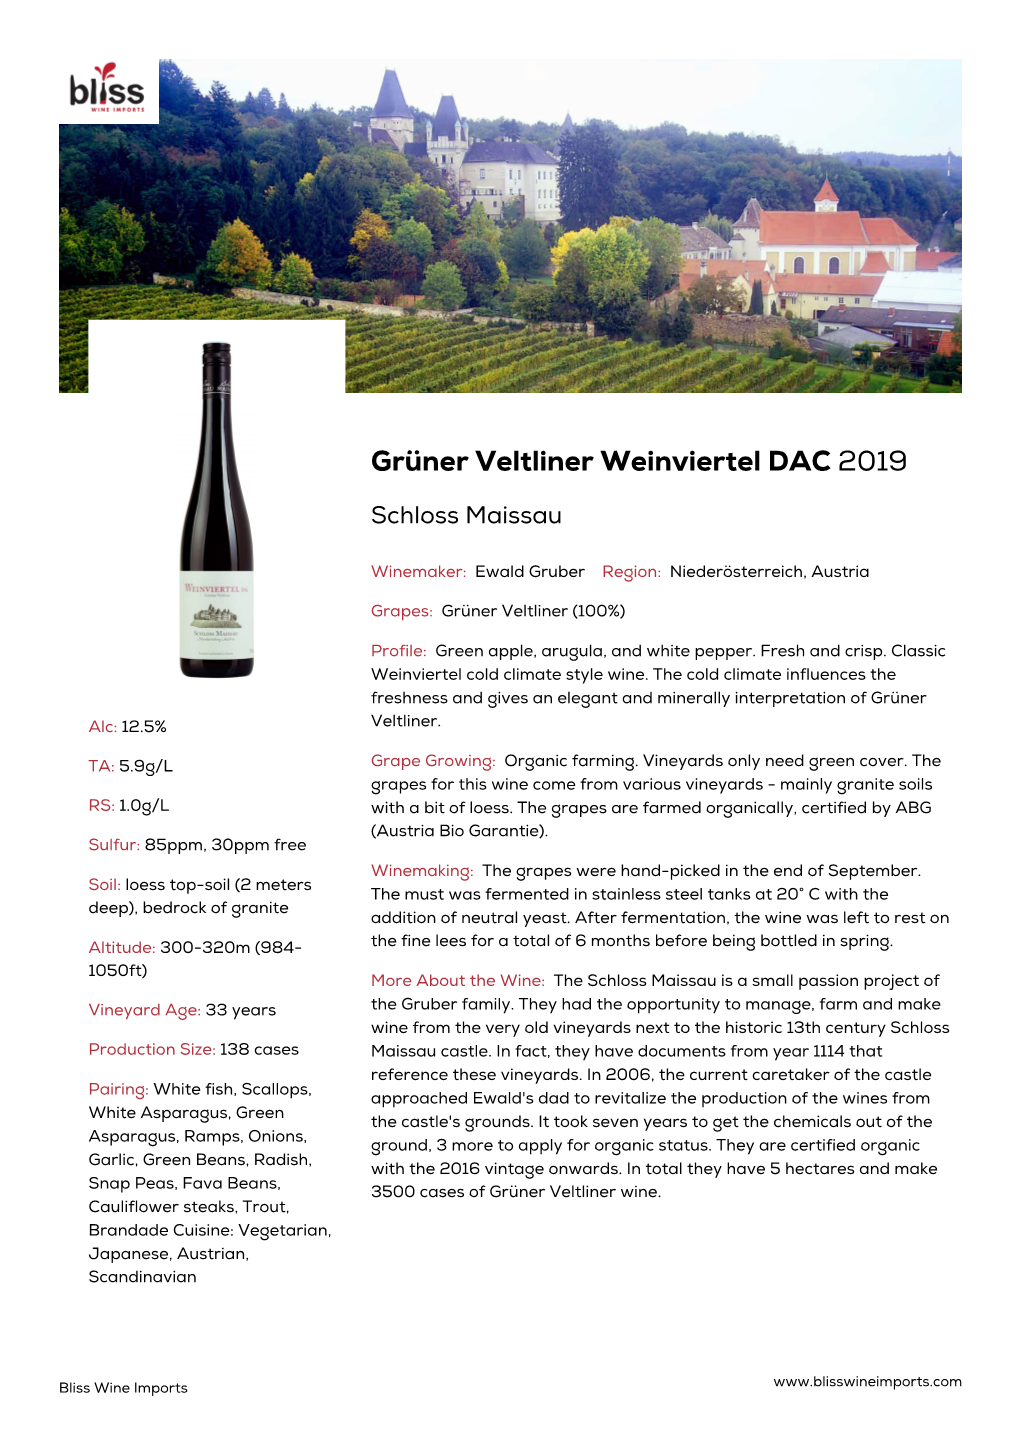 Grüner Veltliner Weinviertel DAC 2019